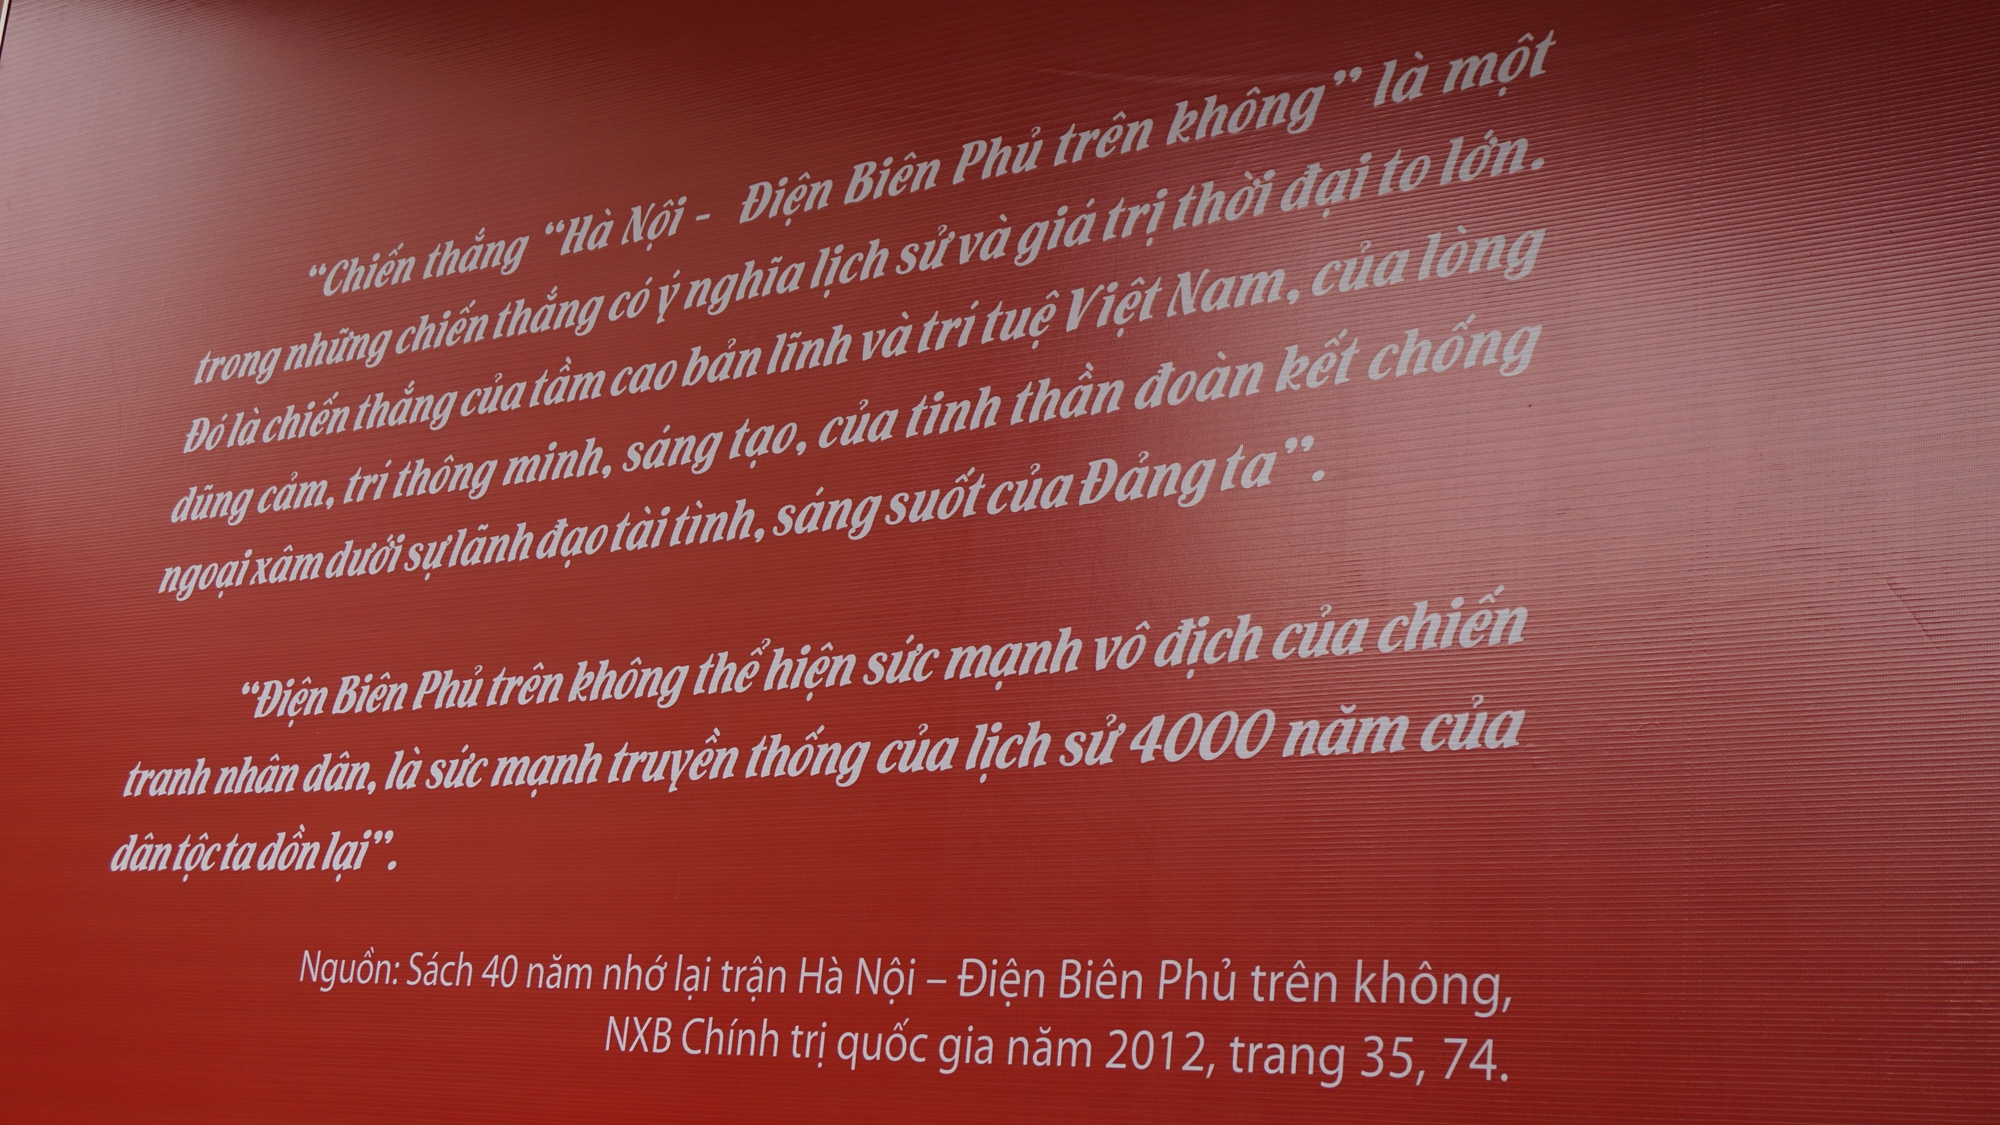 Chiến thắng Điện Biên Phủ trên không: Sức mạnh 4.000 năm dồn lại - Ảnh 1.